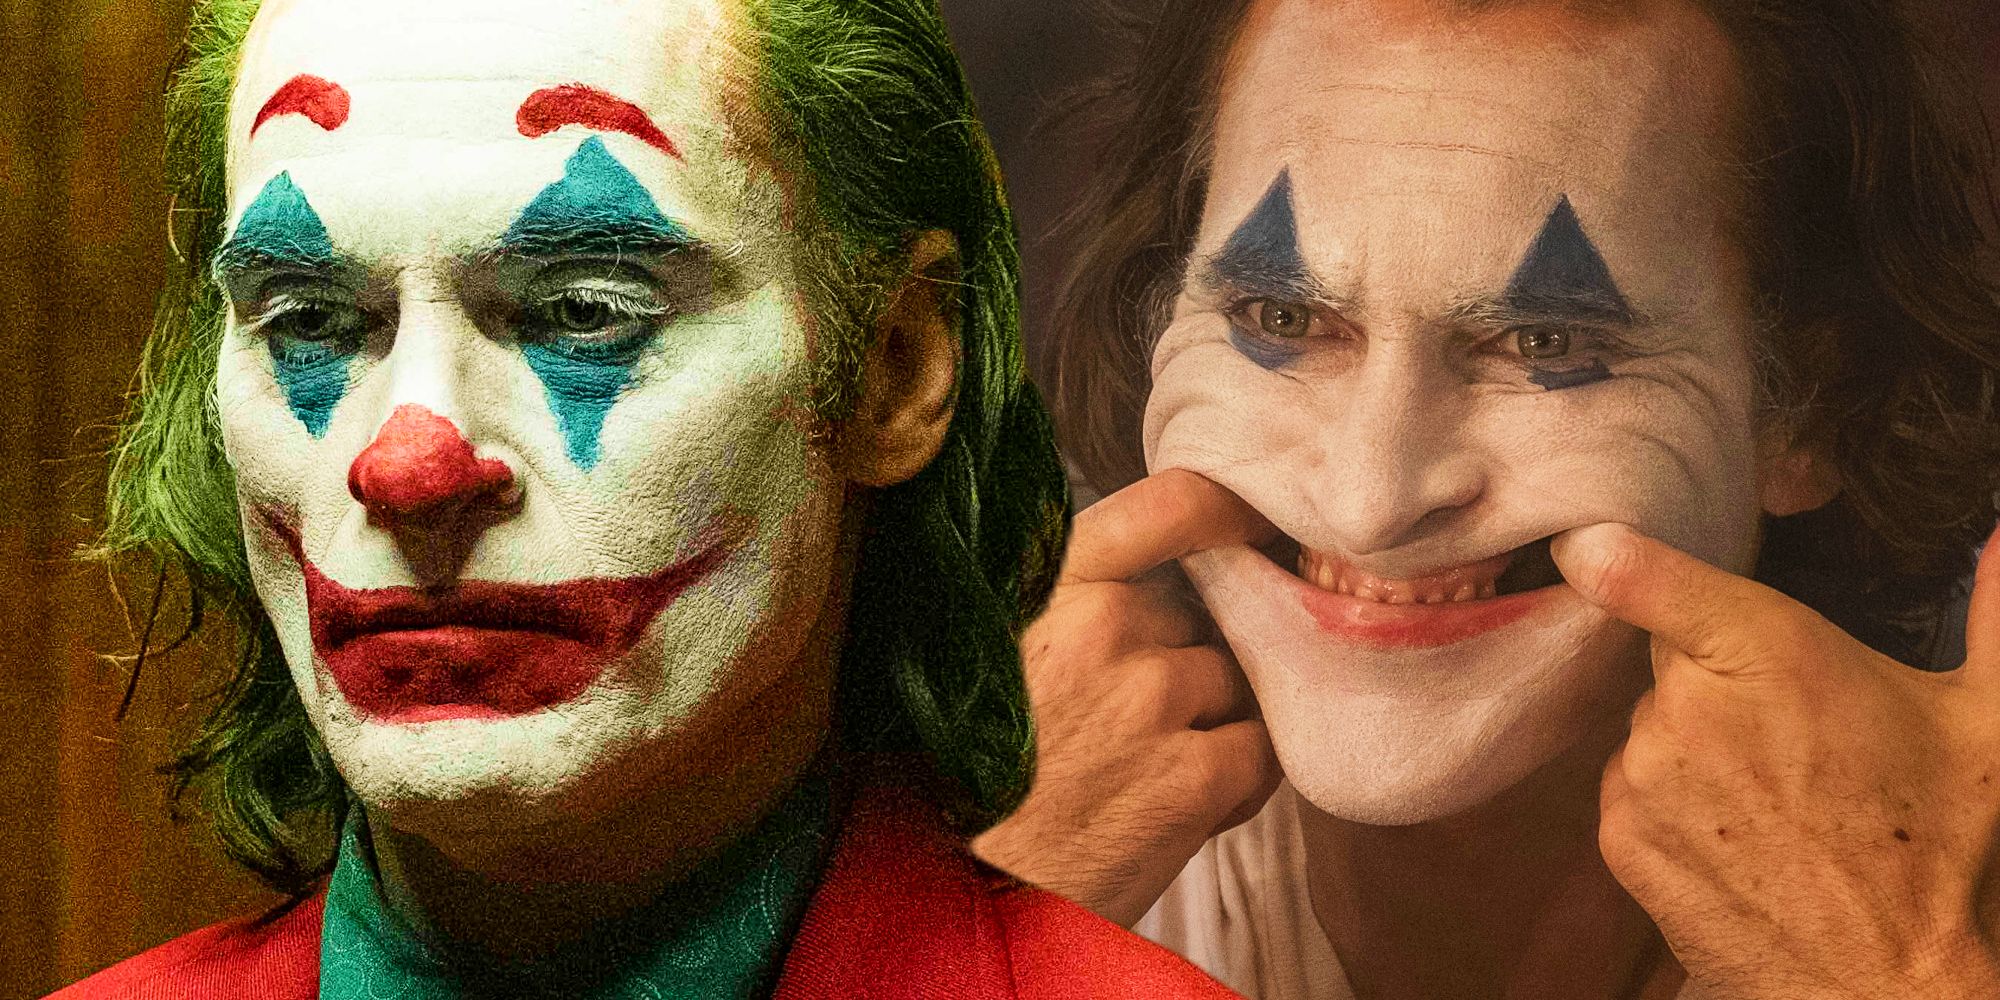 Joaquin Phoenix’s Joker 2 Role Could Break An Oscars Record